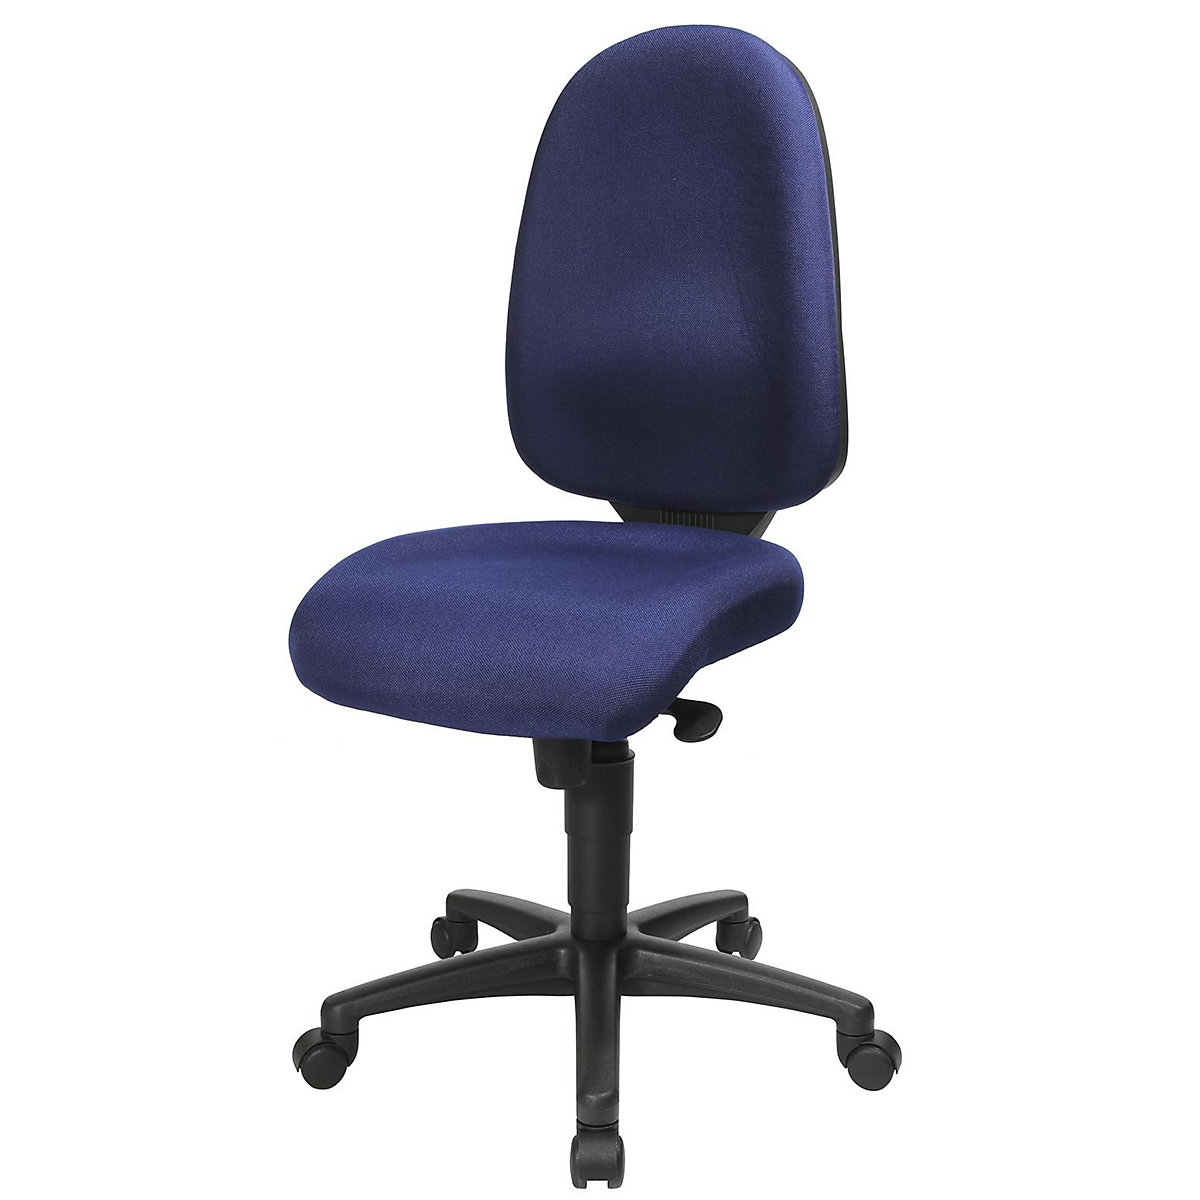 Krzesło obrotowe z podporą lędźwi, mechanizm synchroniczny, siedzisko z podporą lędźwi – Topstar, wys. oparcia 550 mm, obicie błękit królewski-15